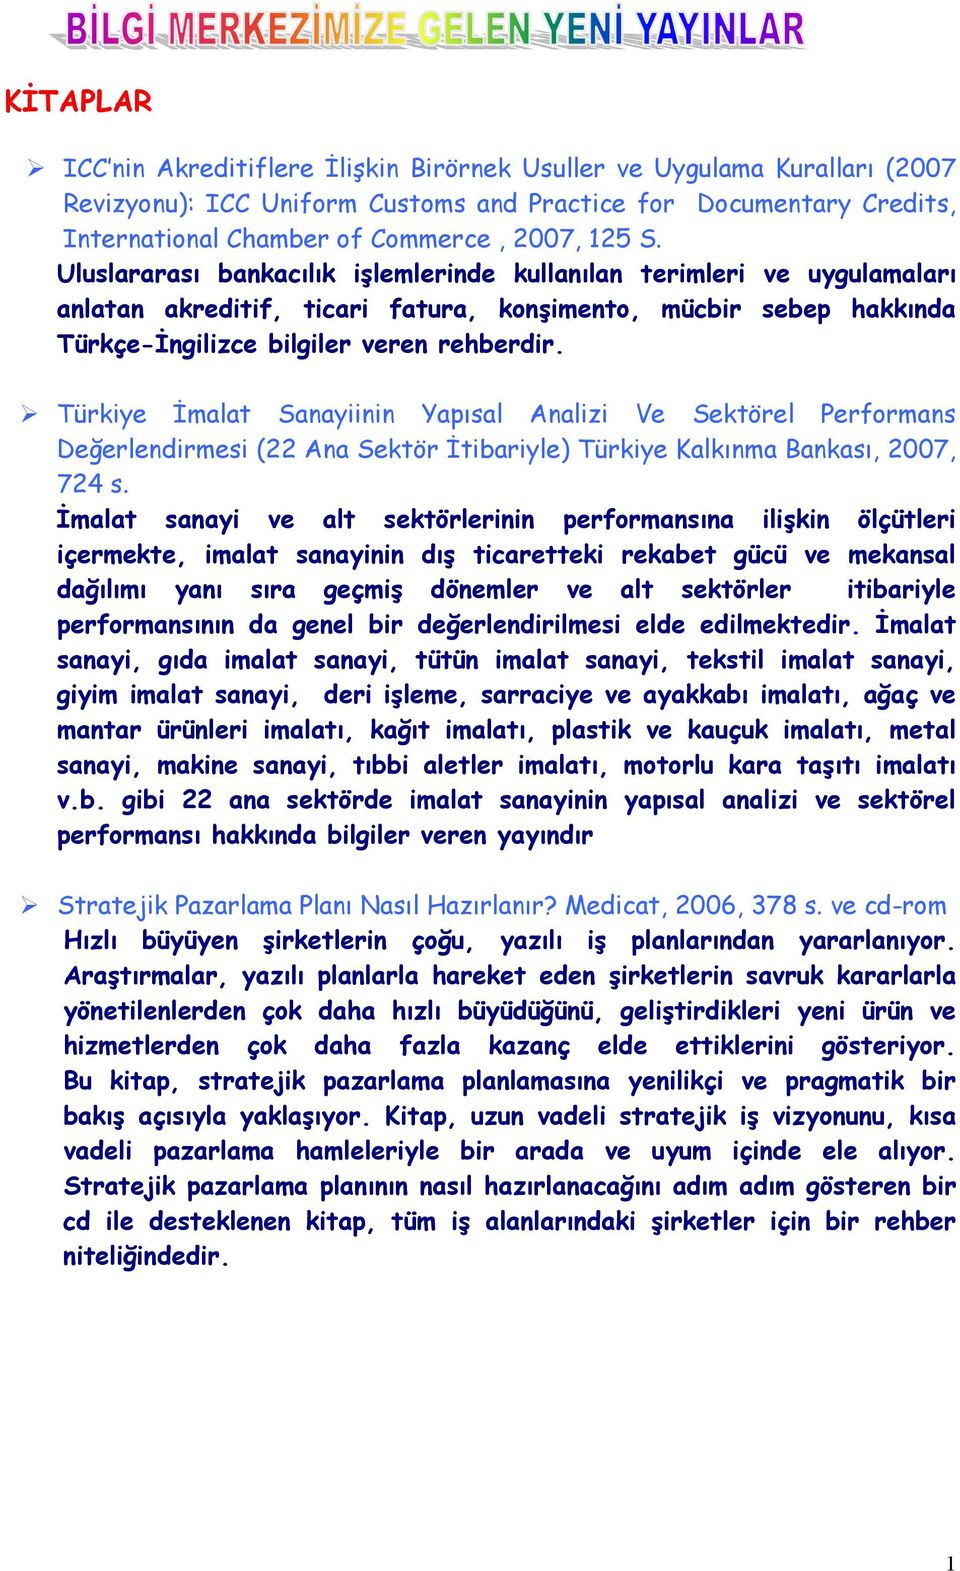 " Türkiye İmalat Sanayiinin Yapõsal Analizi Ve Sektörel Performans Değerlendirmesi (22 Ana Sektör İtibariyle) Türkiye Kalkõnma Bankasõ, 2007, 724 s.